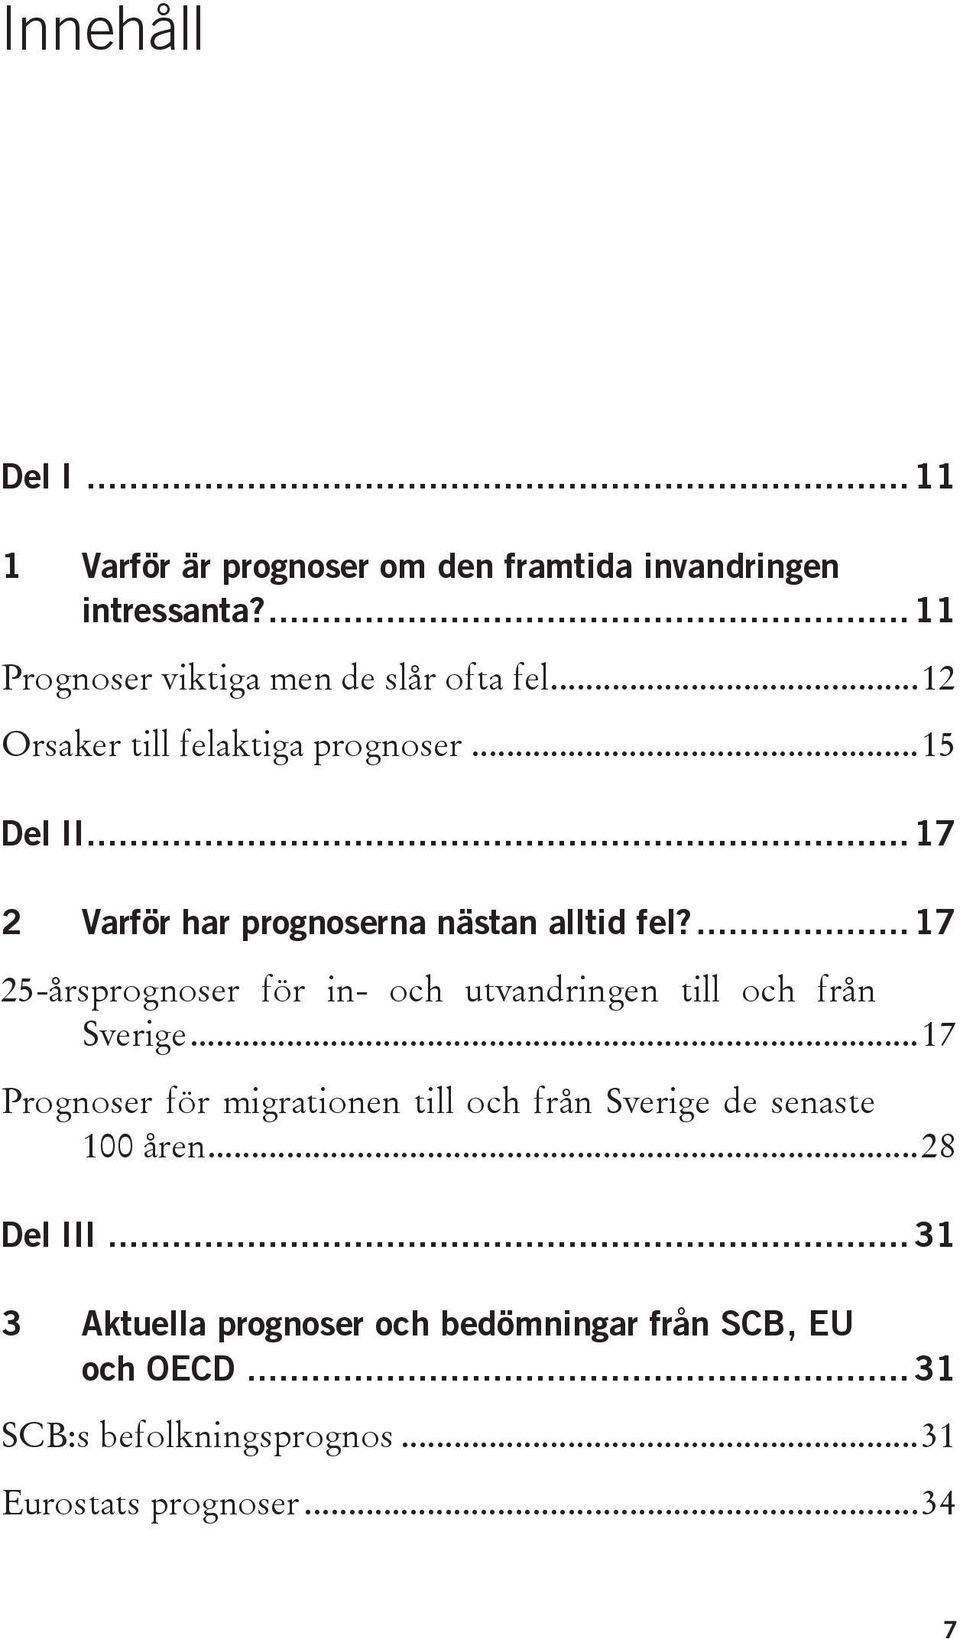 ... 17 25-årsprognoser för in- och utvandringen till och från Sverige.